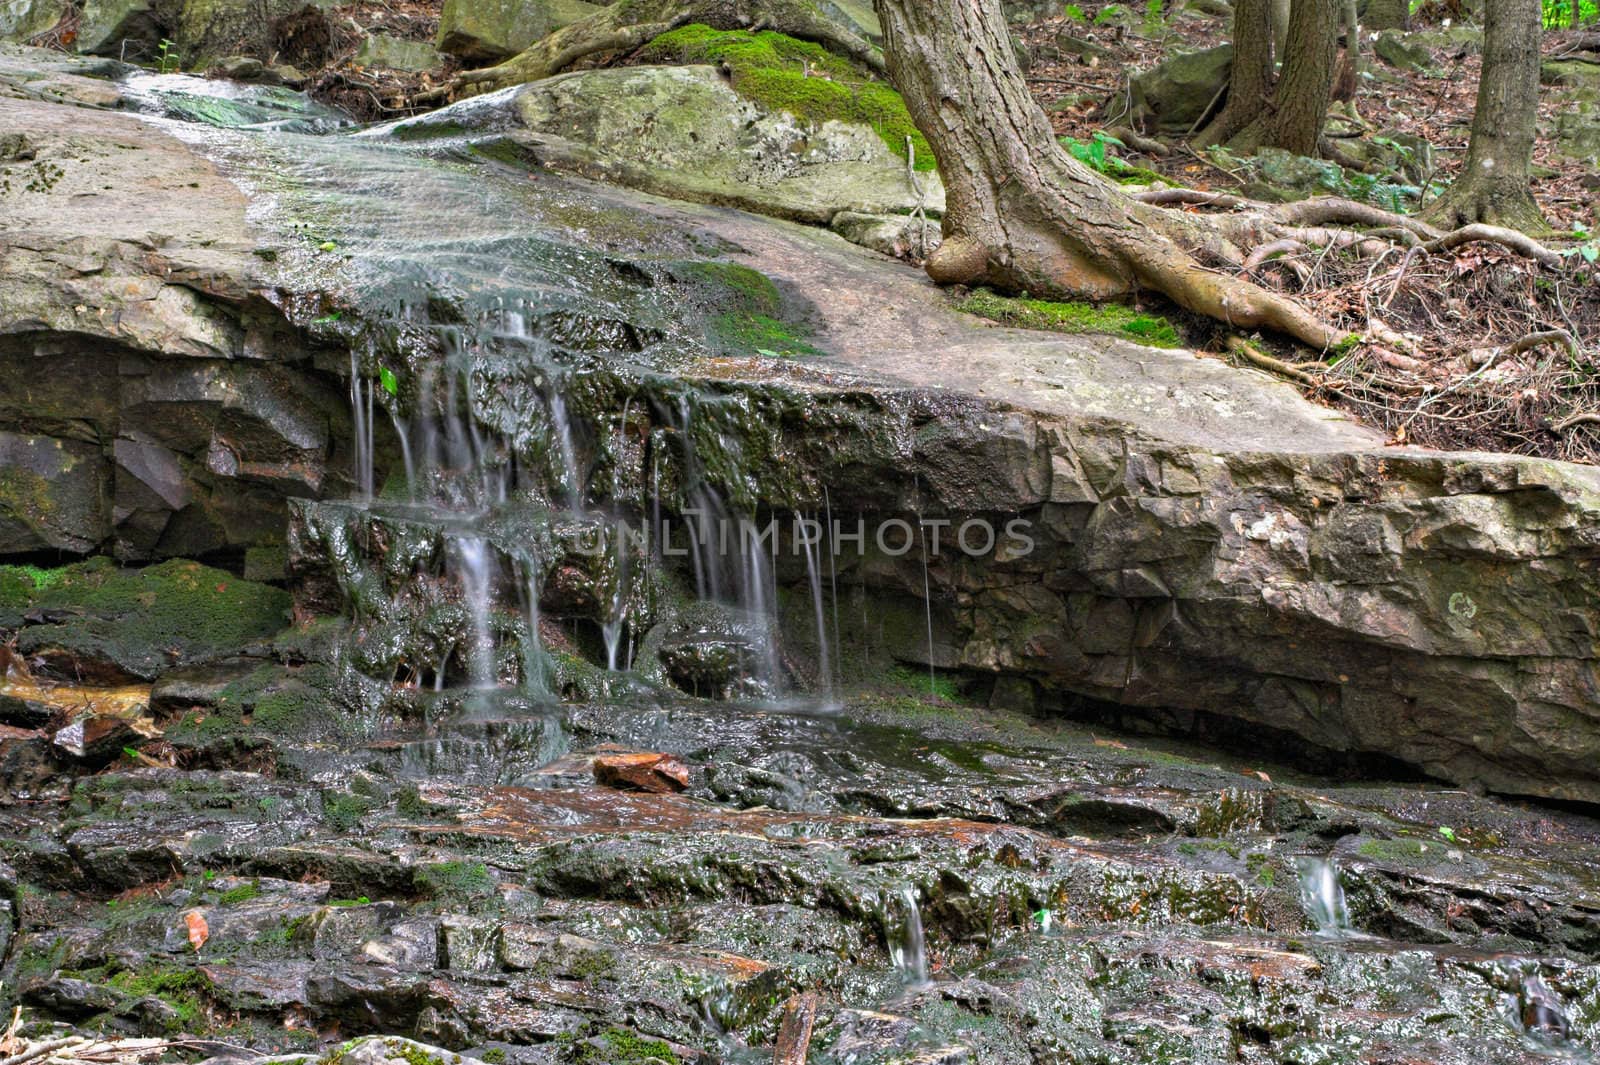 Water on Rocks in Forest by sbonk